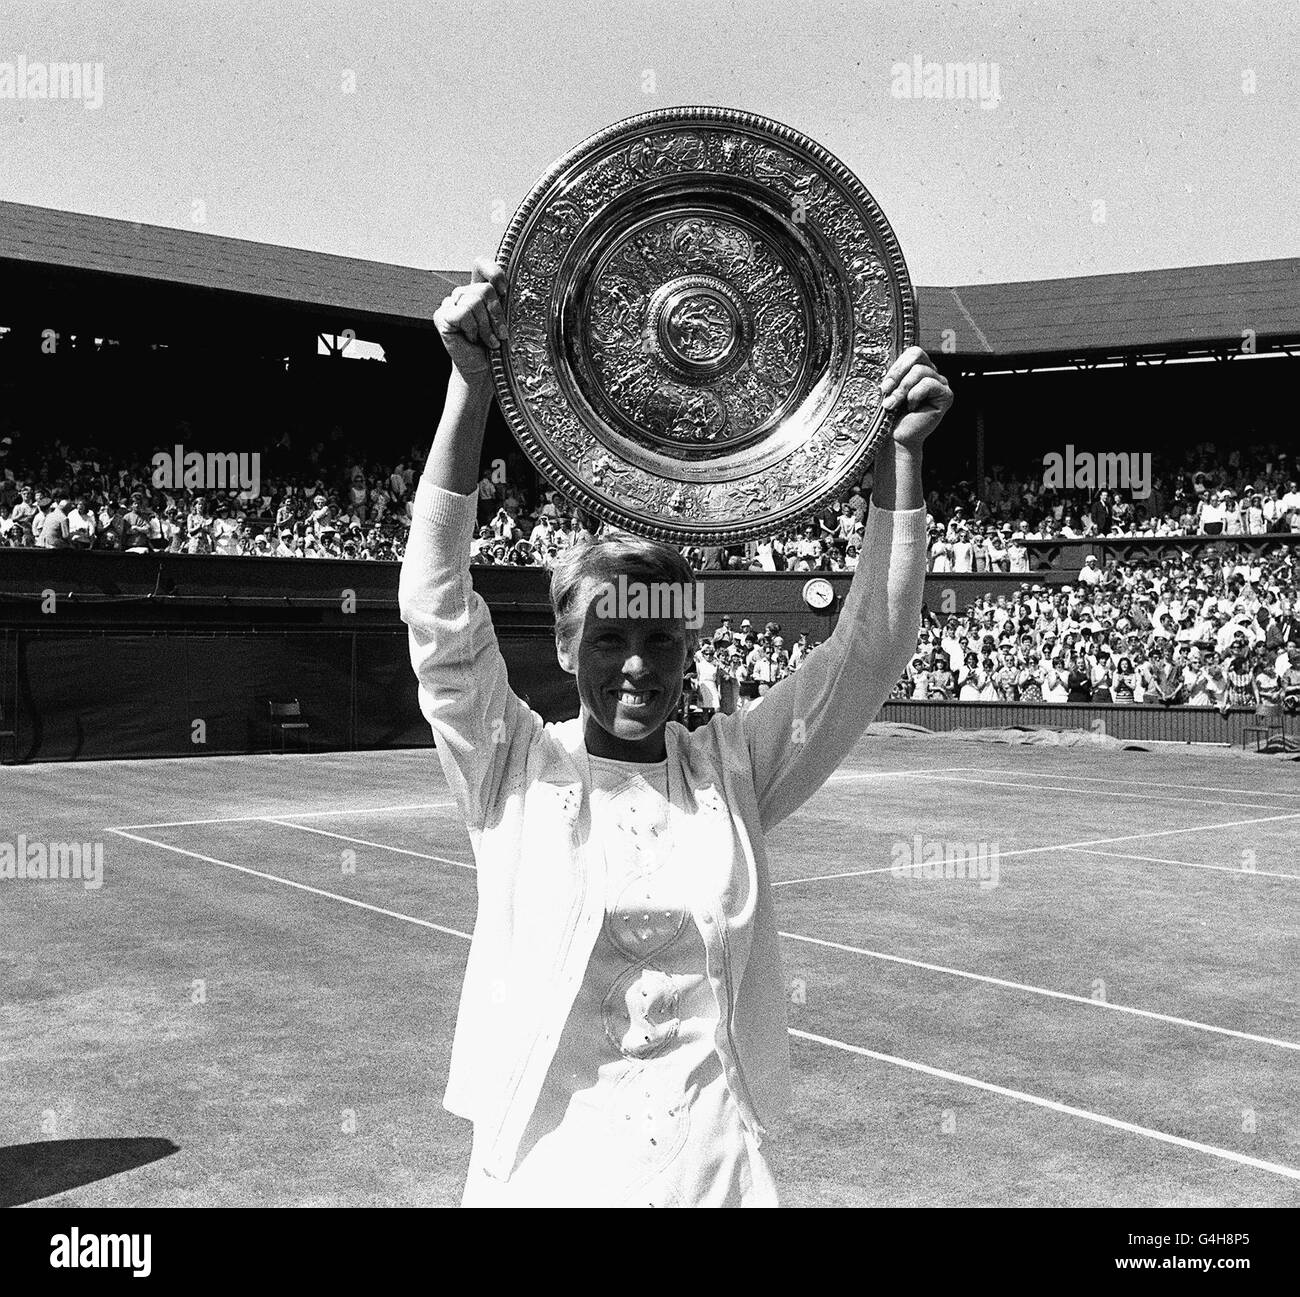 Mme Ann Jones élève le trophée - qui lui vient d'être remis par la princesse Anne - après qu'elle a remporté le championnat féminin des célibataires à Wimbledon, Londres.Mme Jones est le premier joueur britannique à remporter le titre depuis 1961 (Angela Mortimer), battant le titulaire, l'américaine Mme Billie Jean King, 3-6 6-3 6-2 dans la finale sur la Cour du Centre.Ce n'est que la deuxième fois en 32 ans qu'un woiman britannique remporte le titre. Banque D'Images